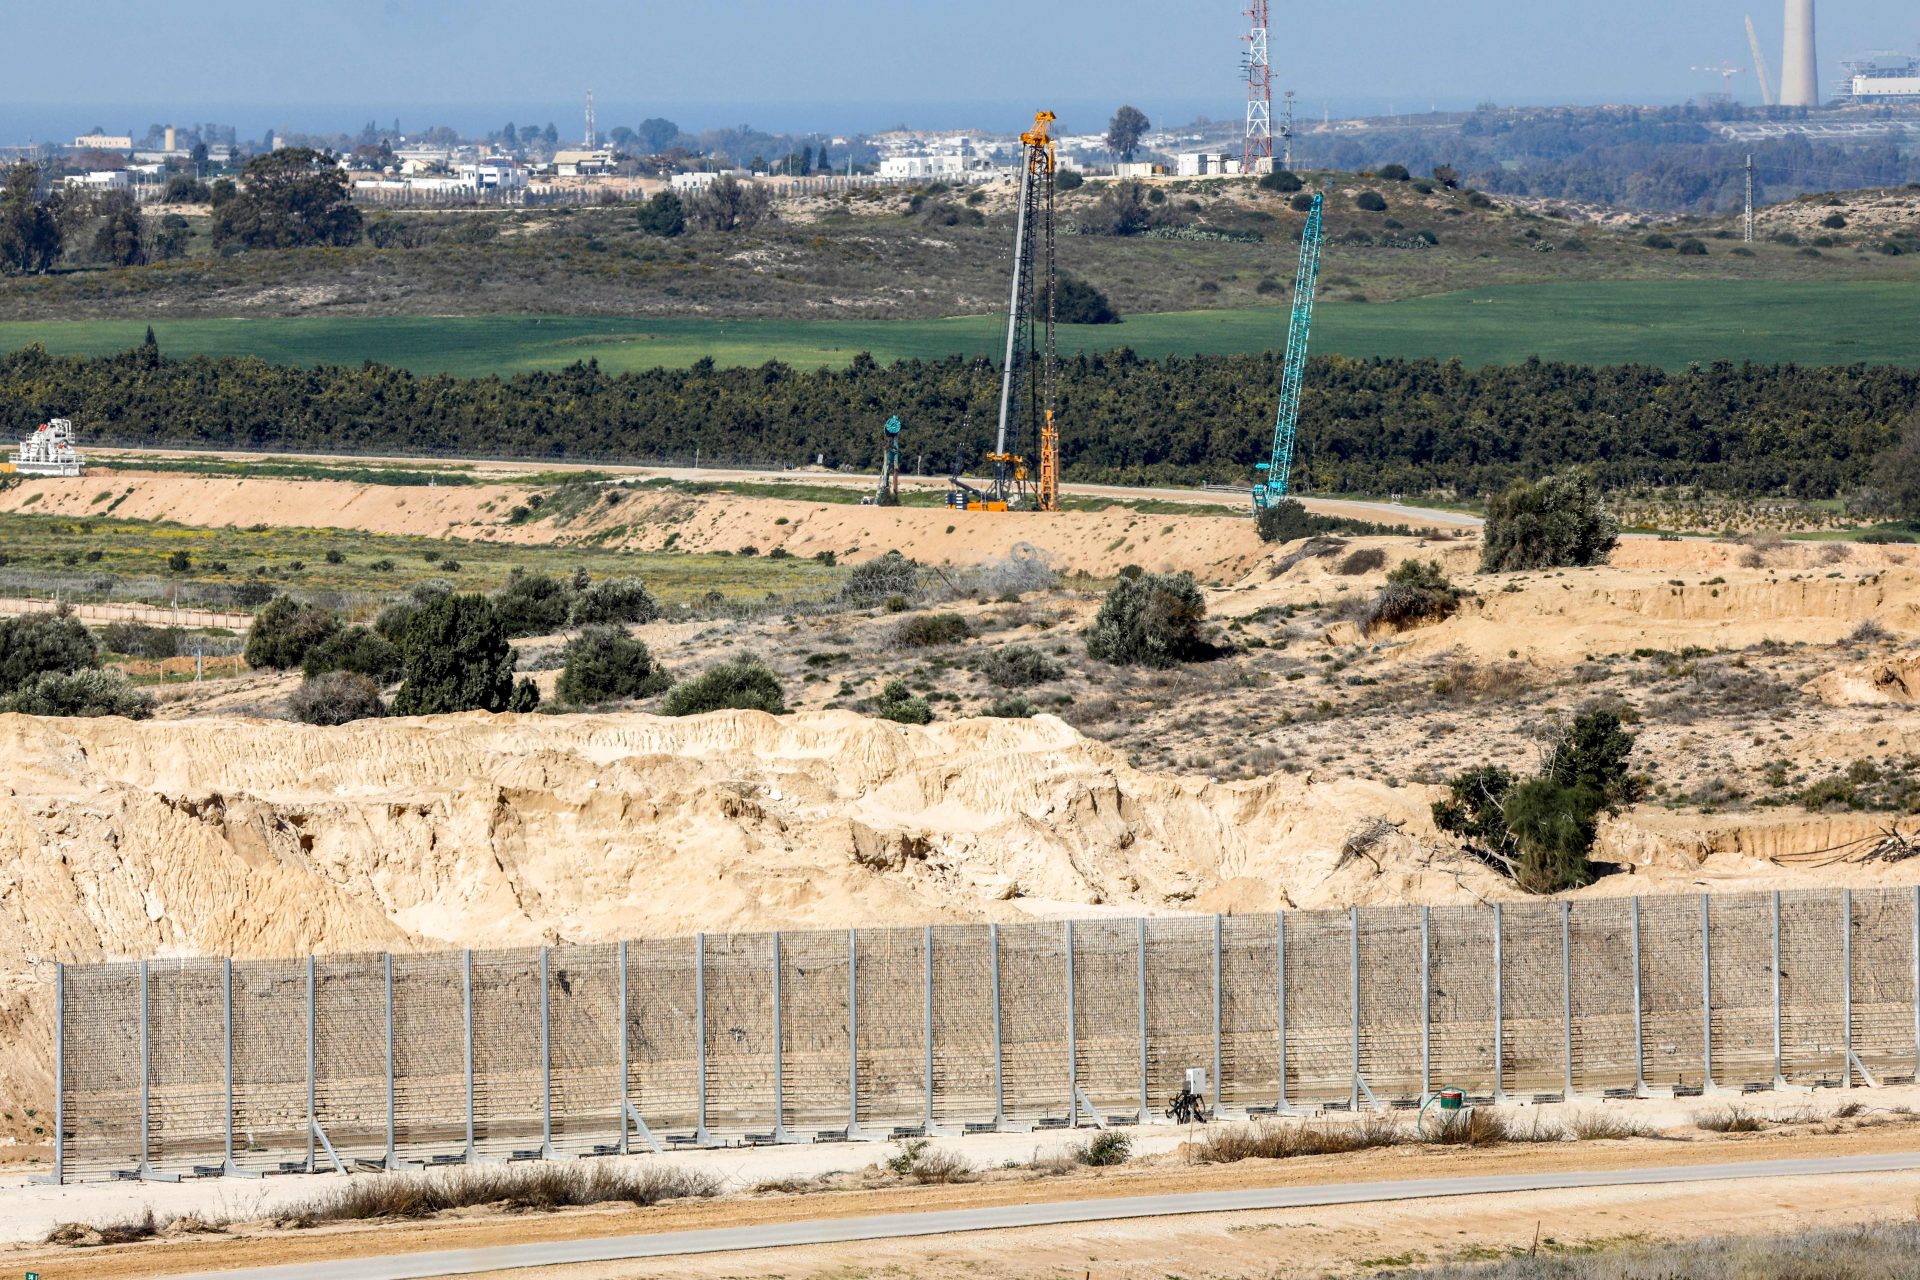 Israel installed an underground barrier in 2021